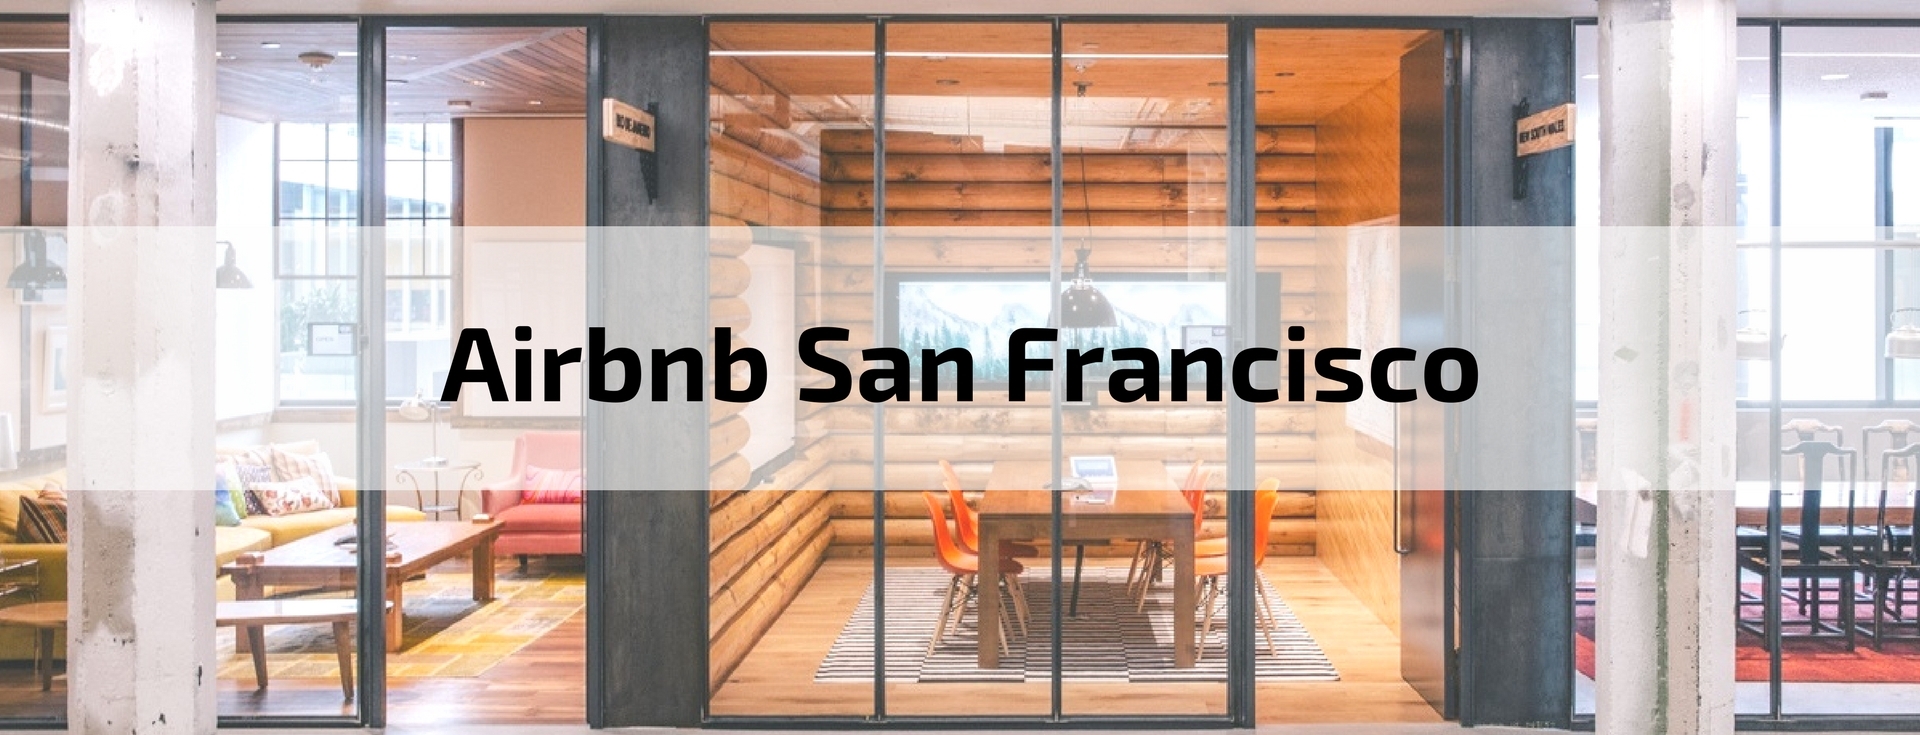 [Ofis Tasarımları] Airbnb San Francisco Genel Merkezi 